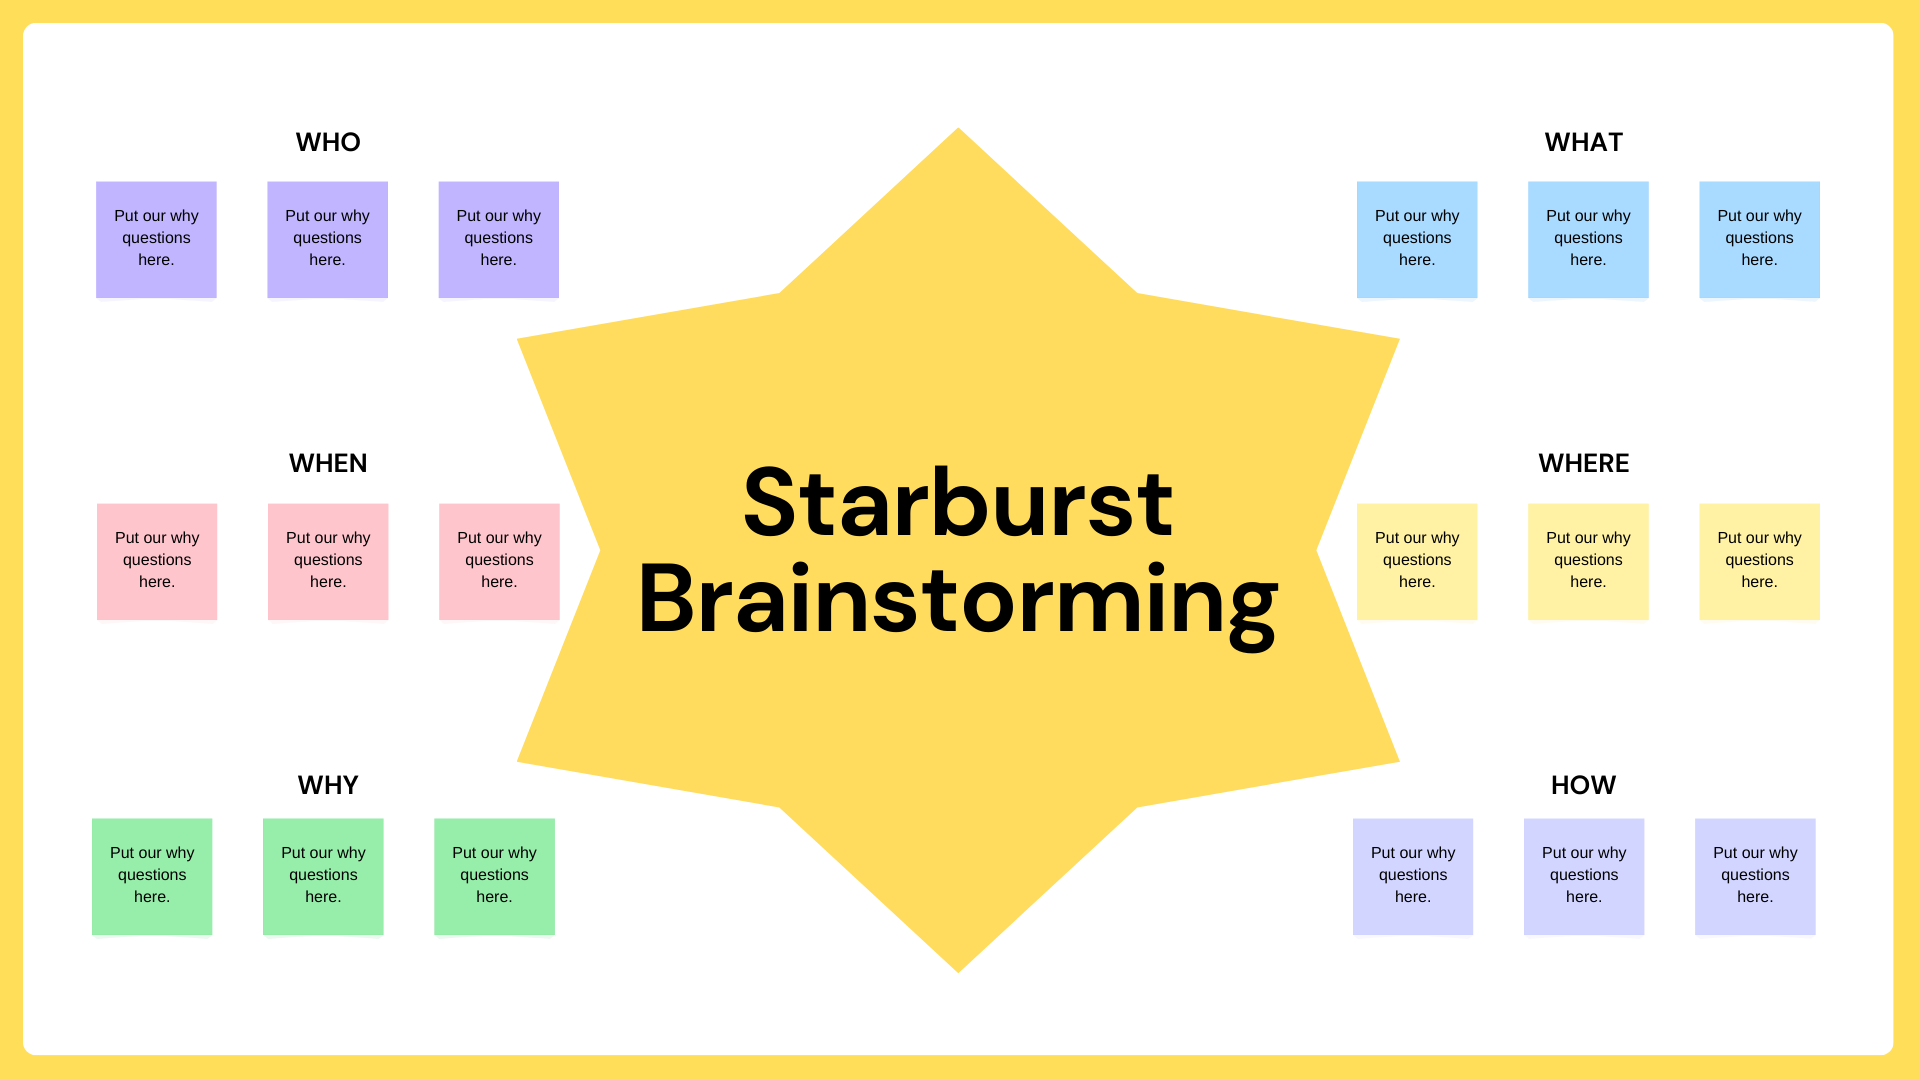 Brainstorming starbursting